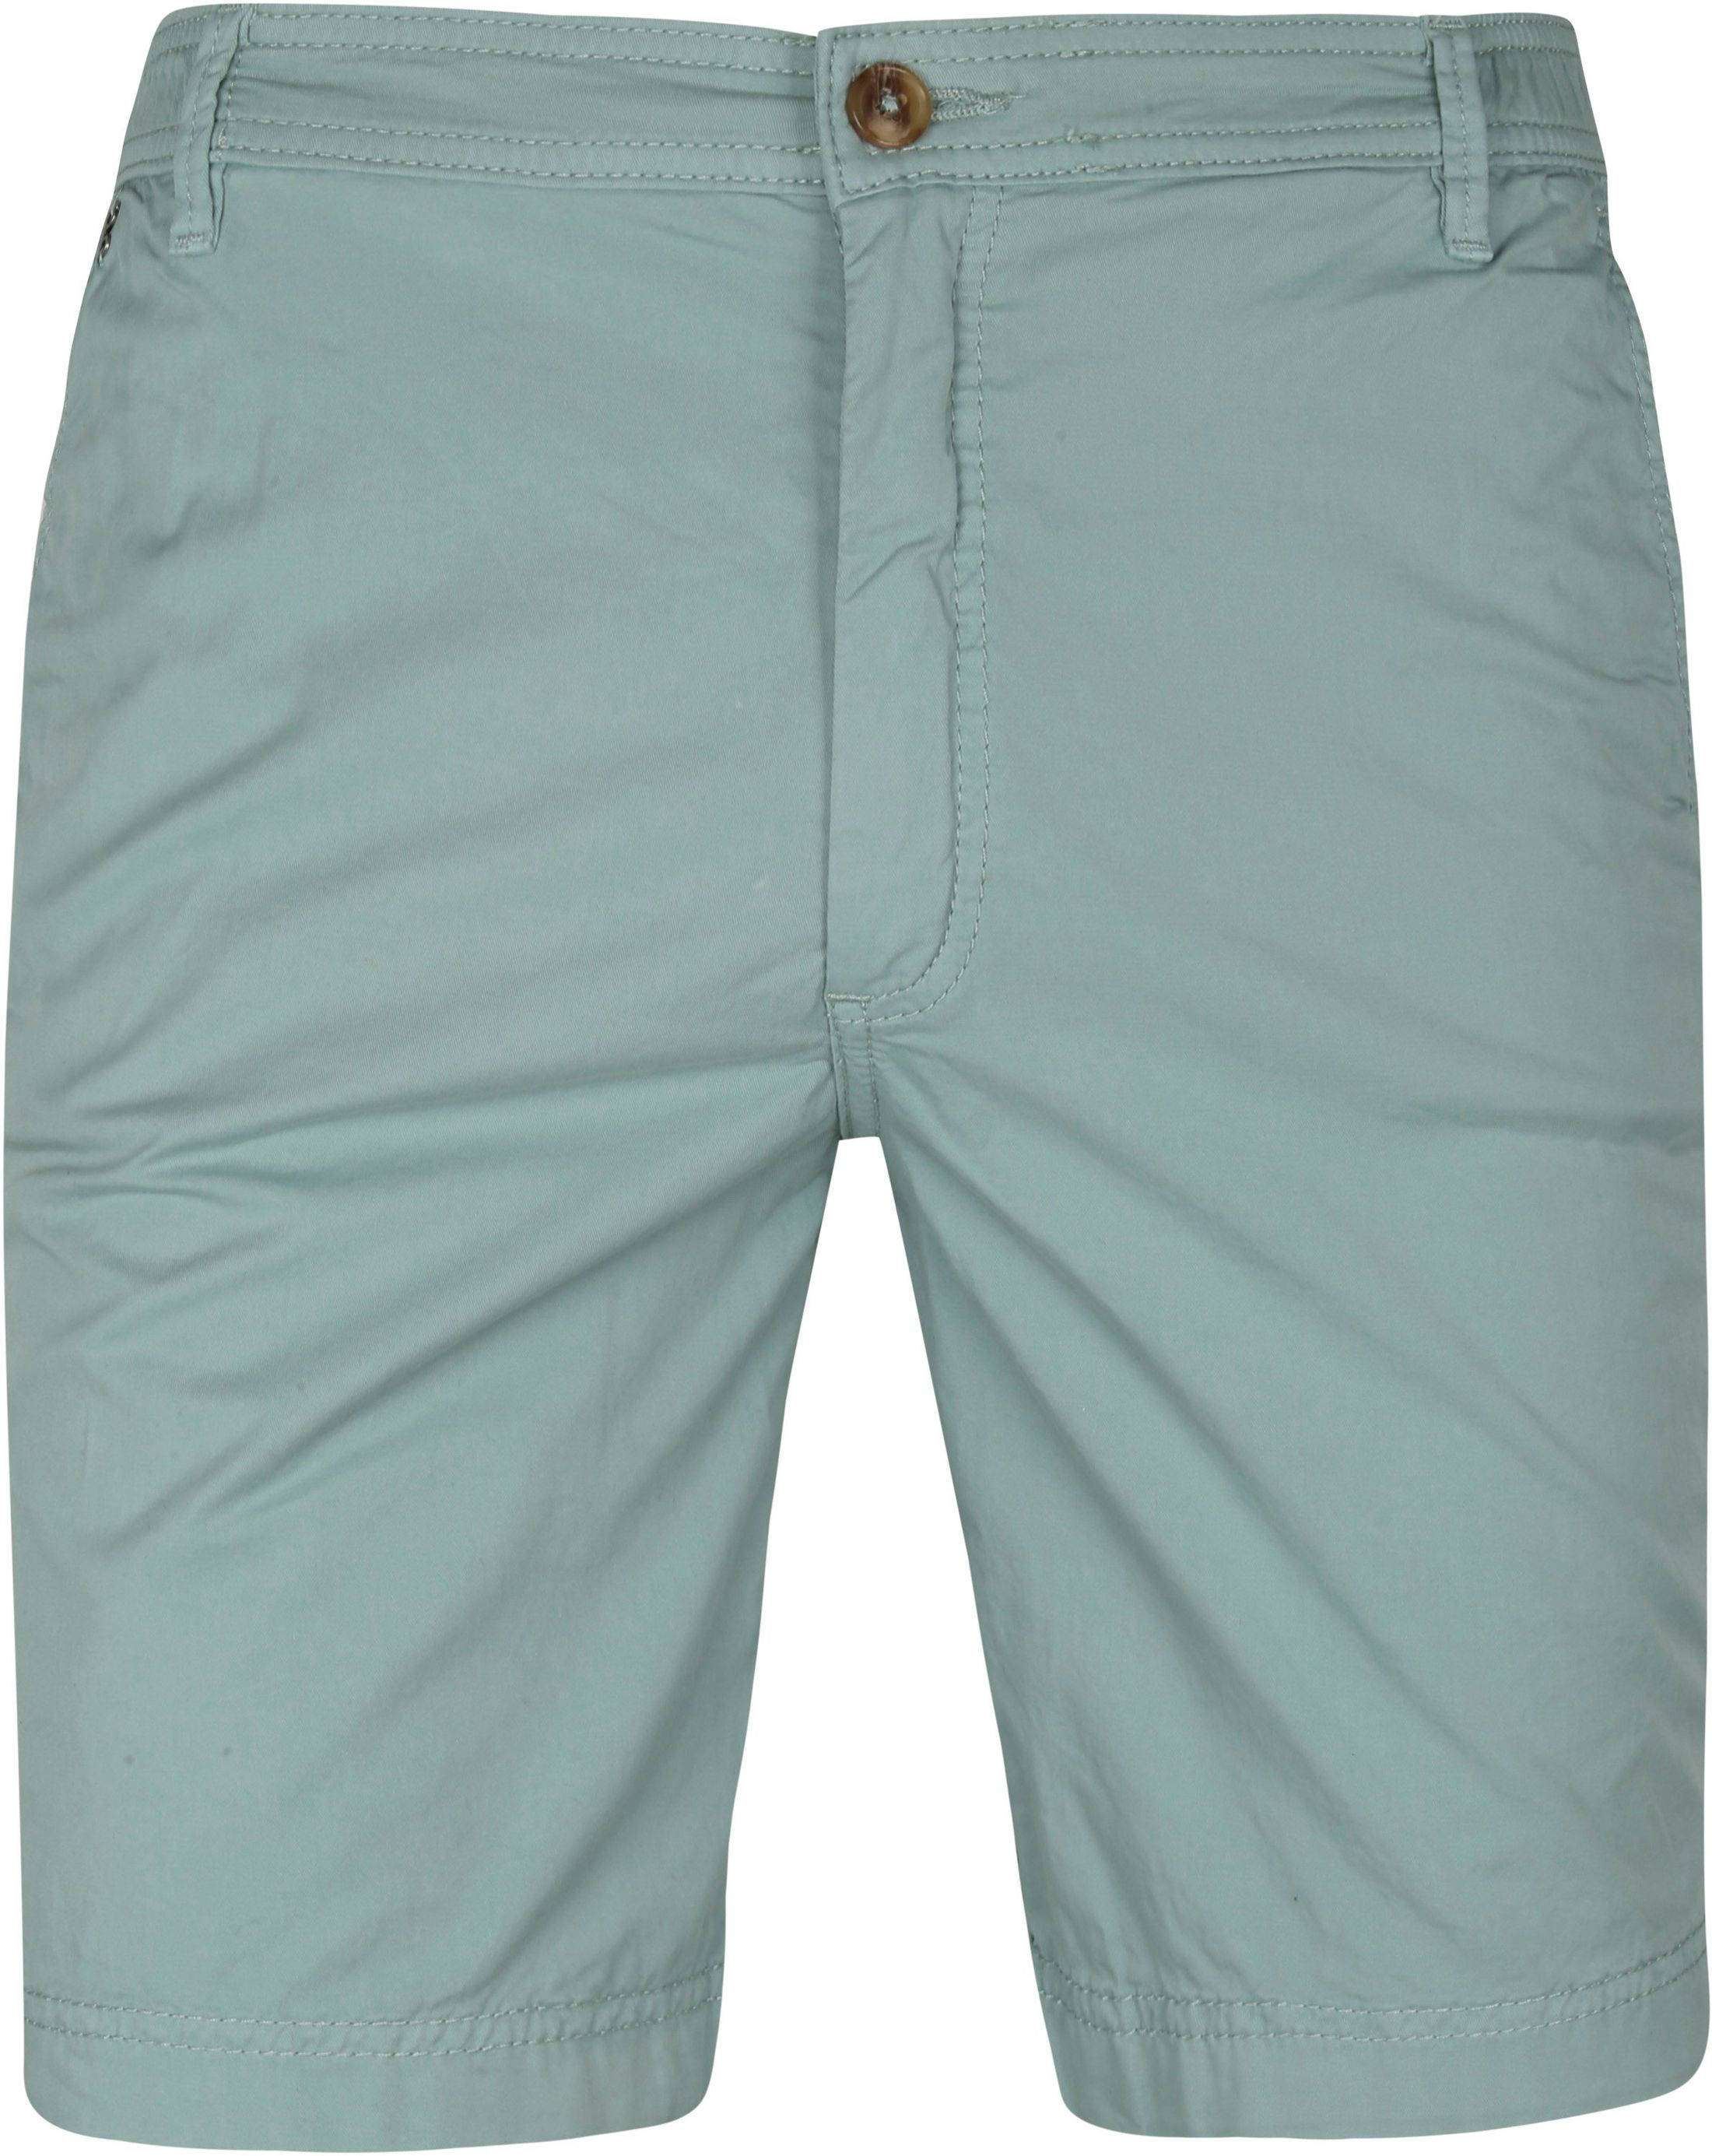 Gardeur Shorts Green size L